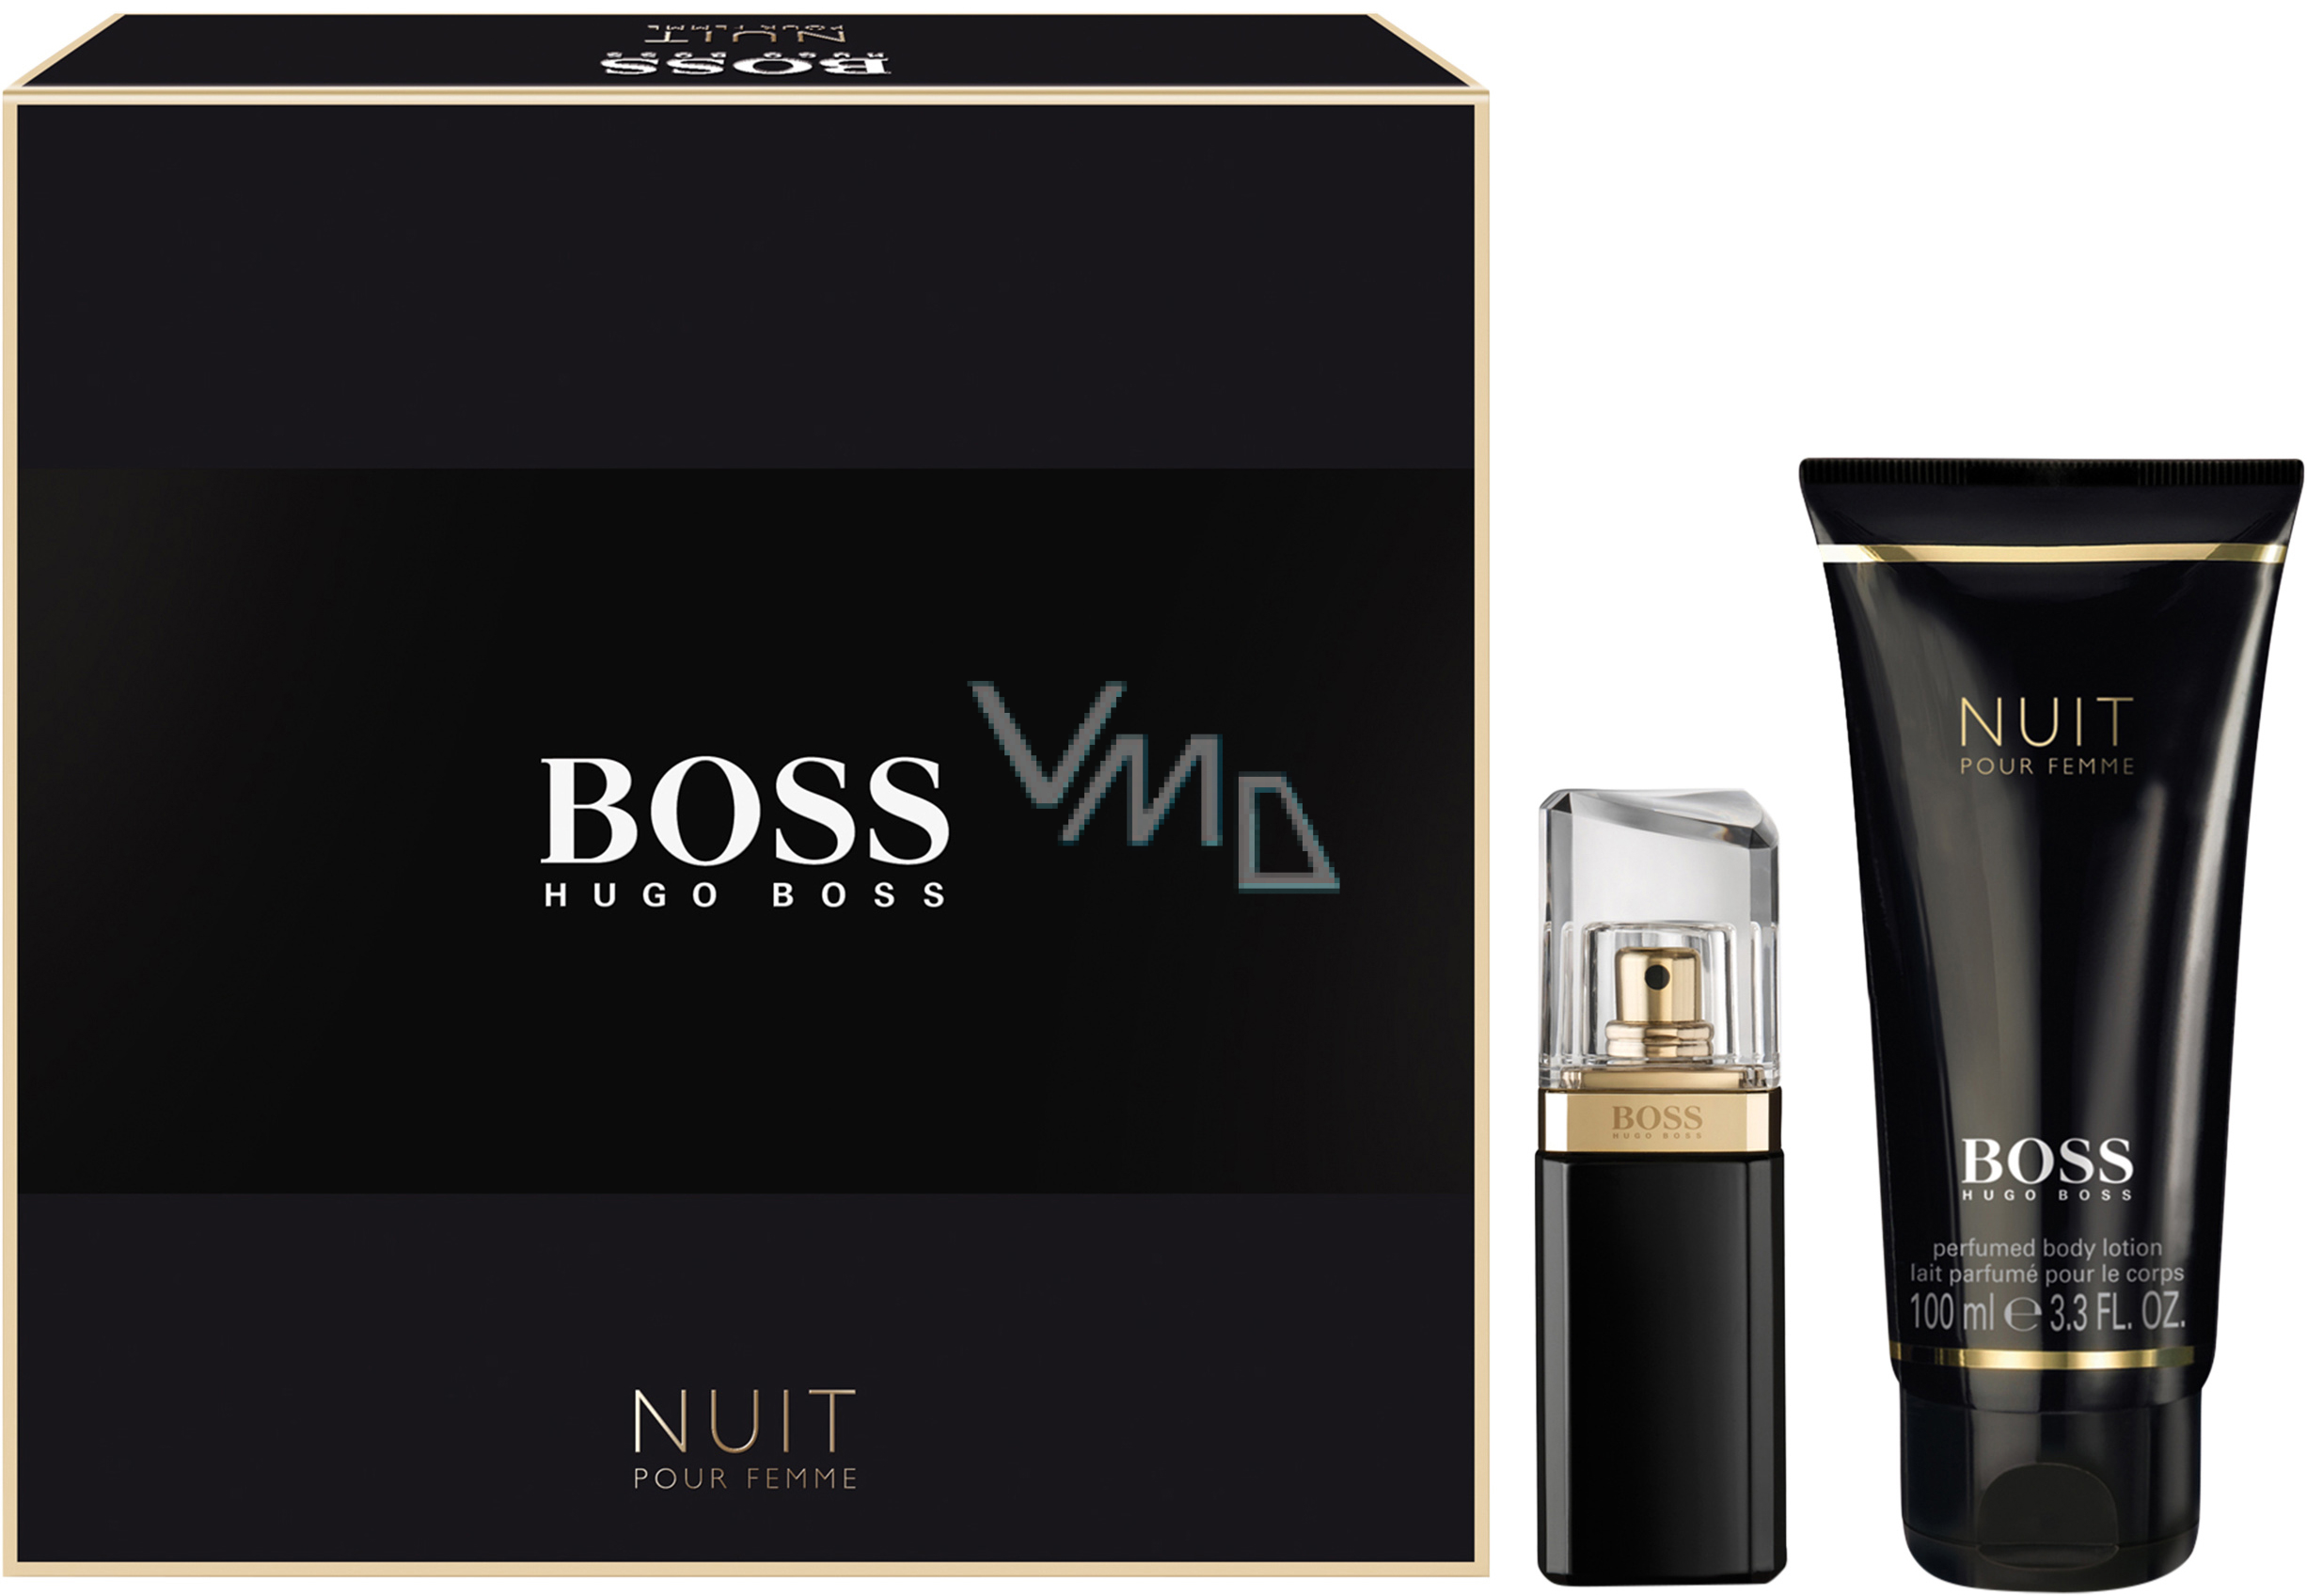 Hugo Boss Nuit pour Femme perfumed water 30 ml + body lotion 100 ml, gift set - parfumerie - drogerie